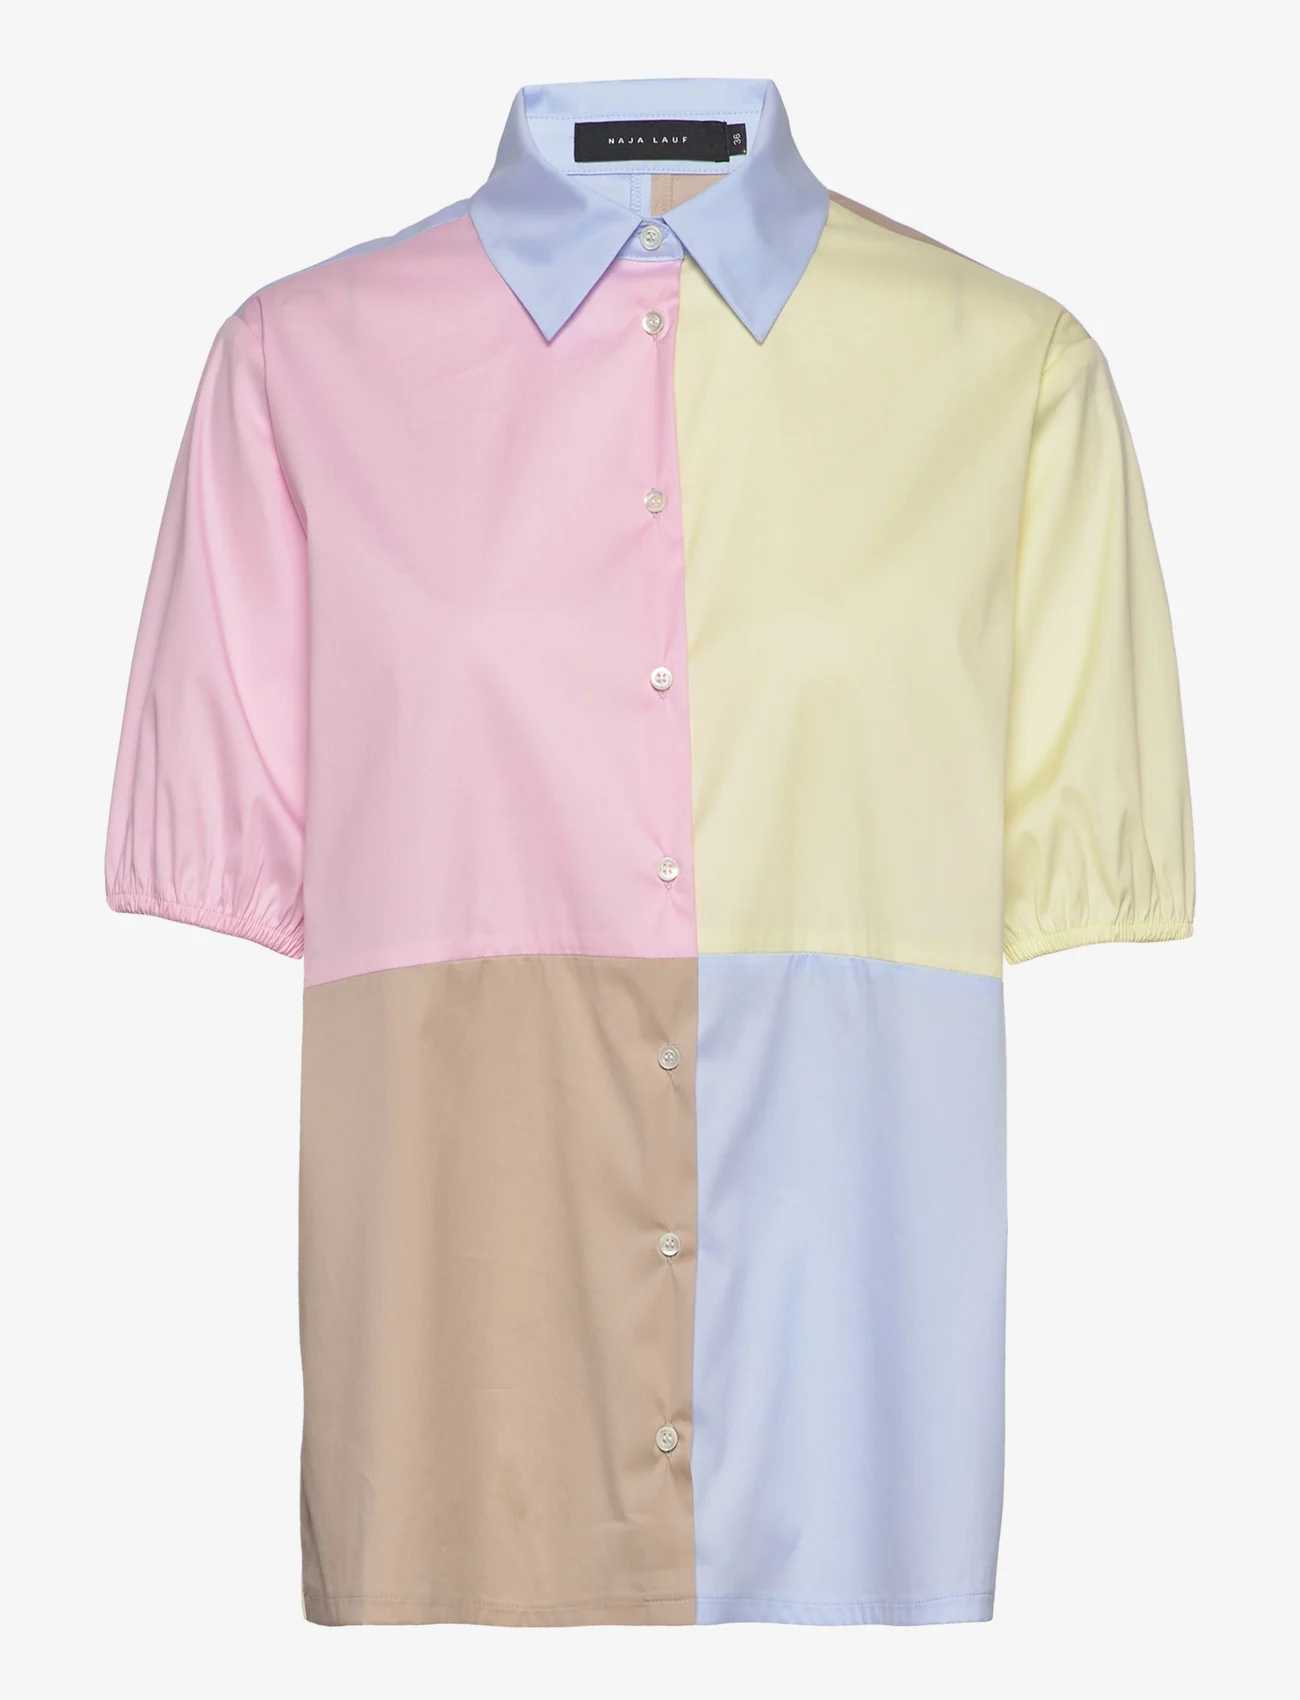 Naja Lauf - ROSALIA SHIRT - kurzärmlige hemden - rose-blue-yellow-beige - 0